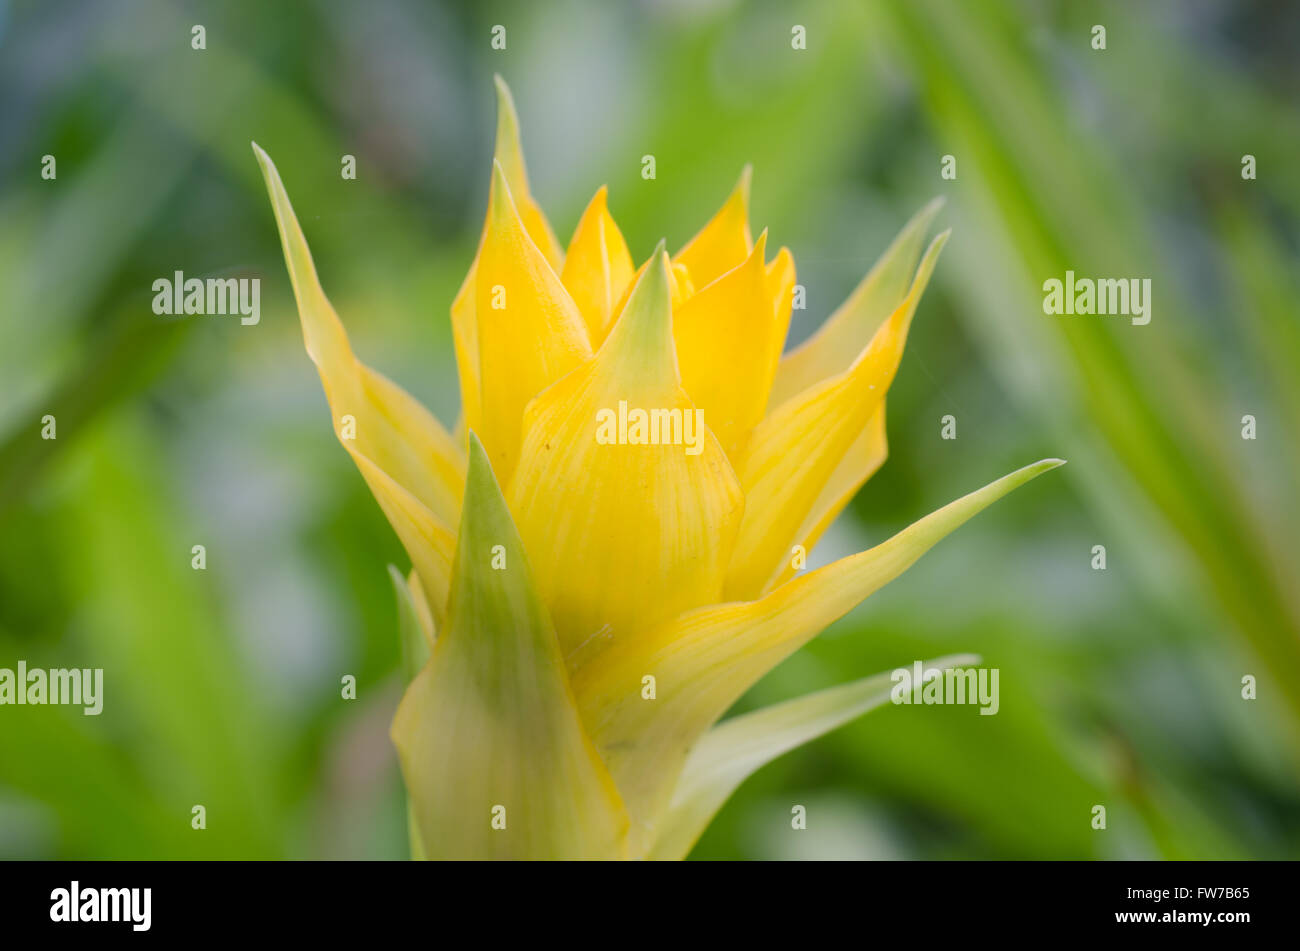 Bromeliad flower Stock Photo